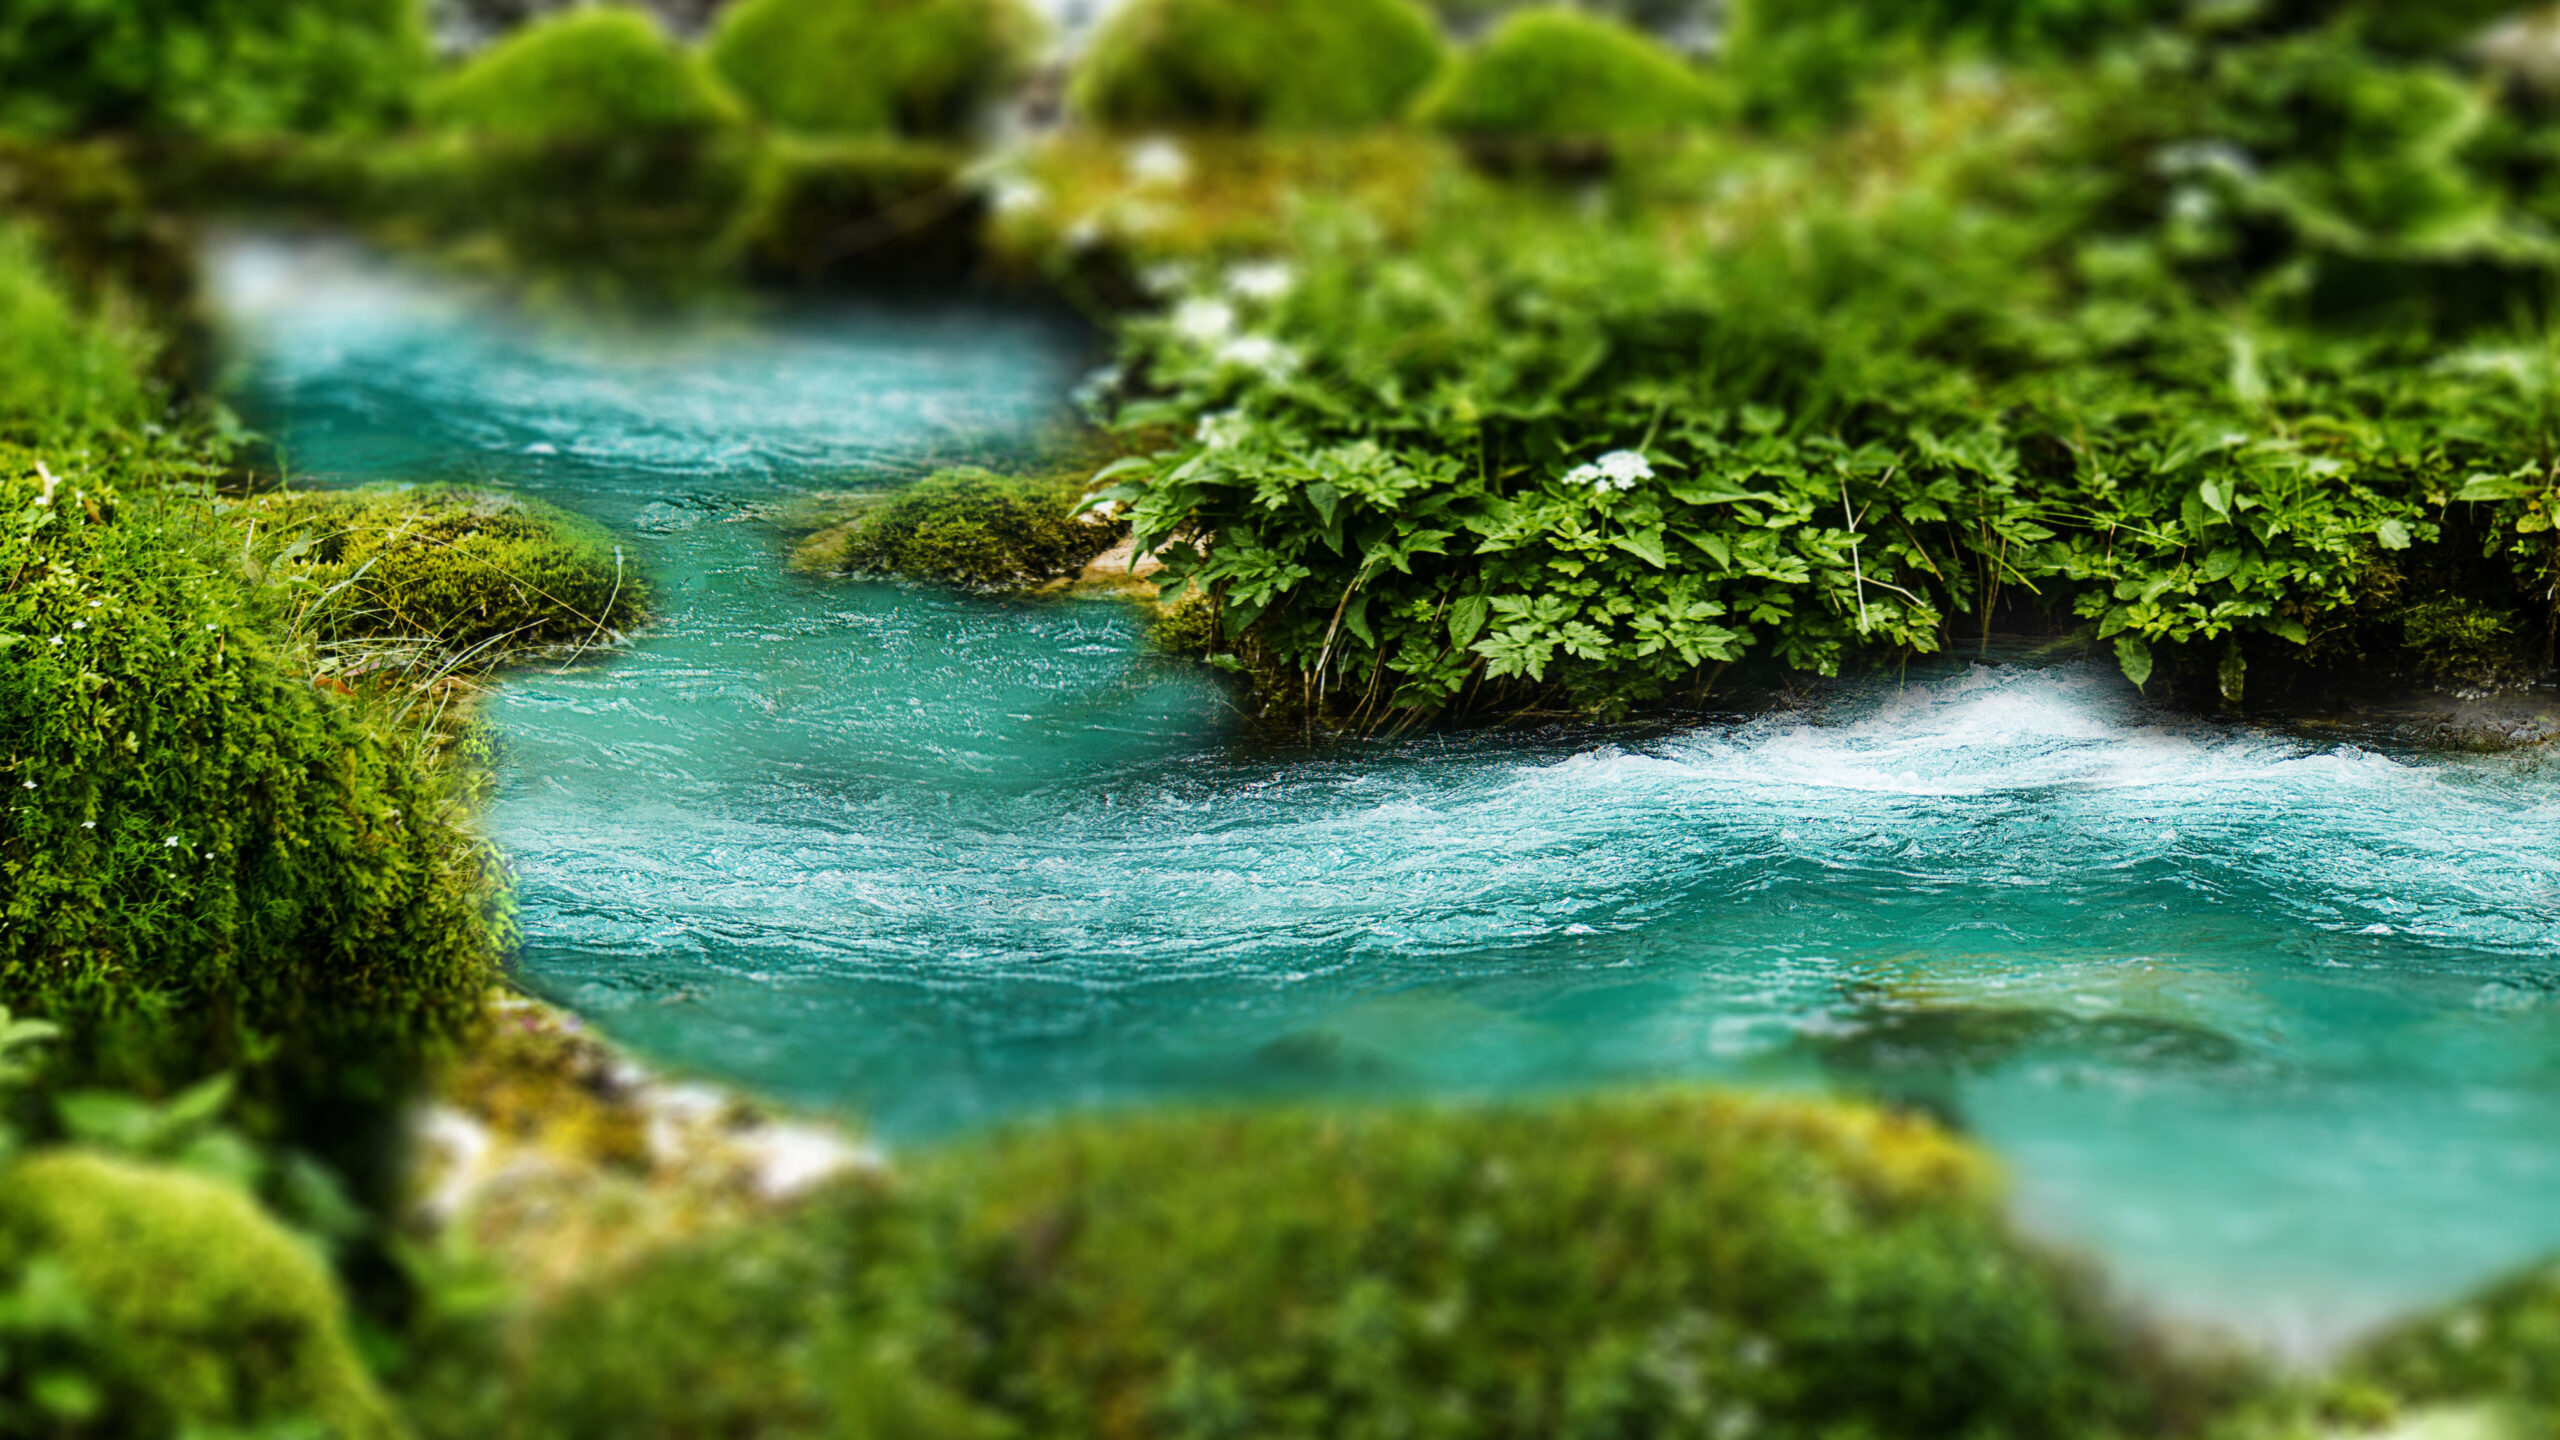 A blue river runs through a bed of green moss